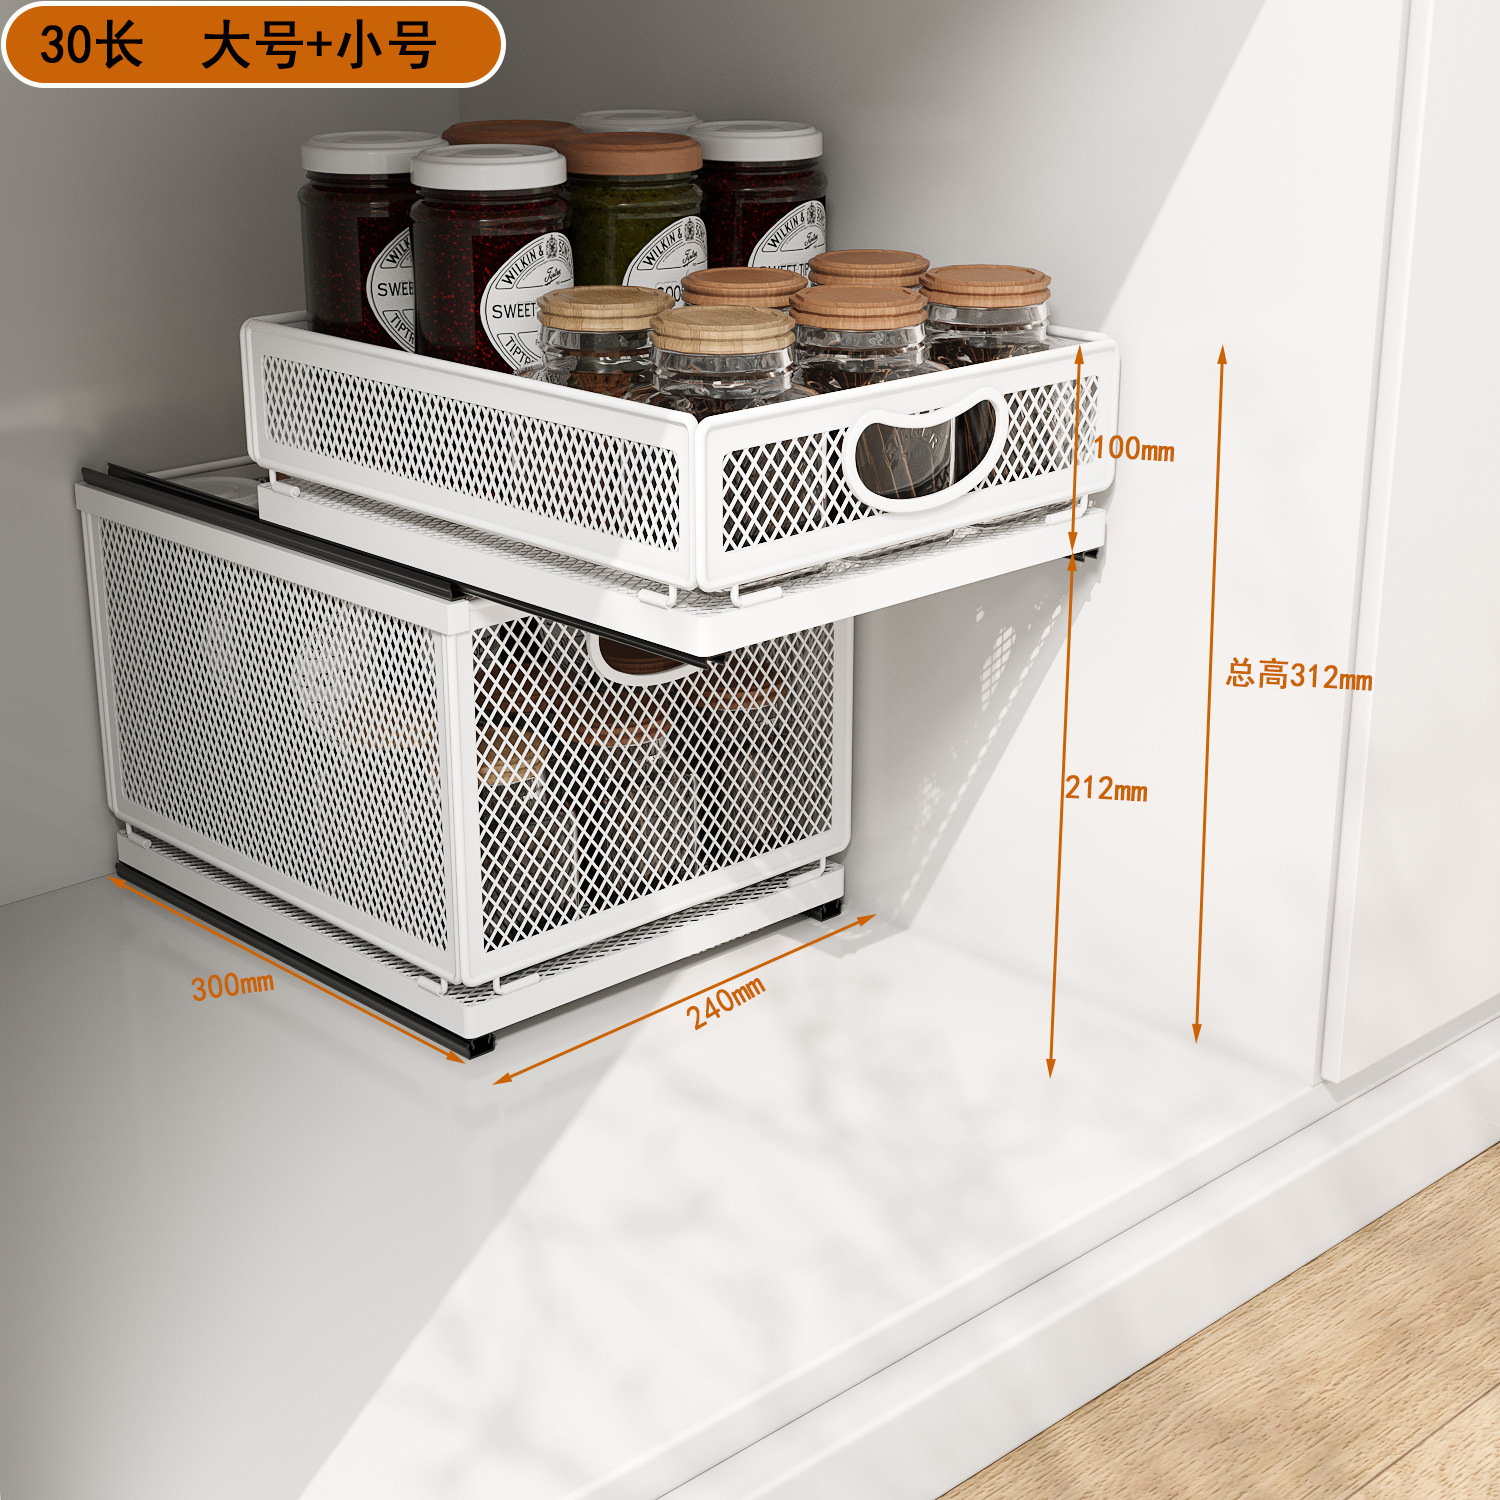 厨房30CM浅款下水槽置物架抽拉式滑轨橱柜内分层拉篮极矮短杂物框